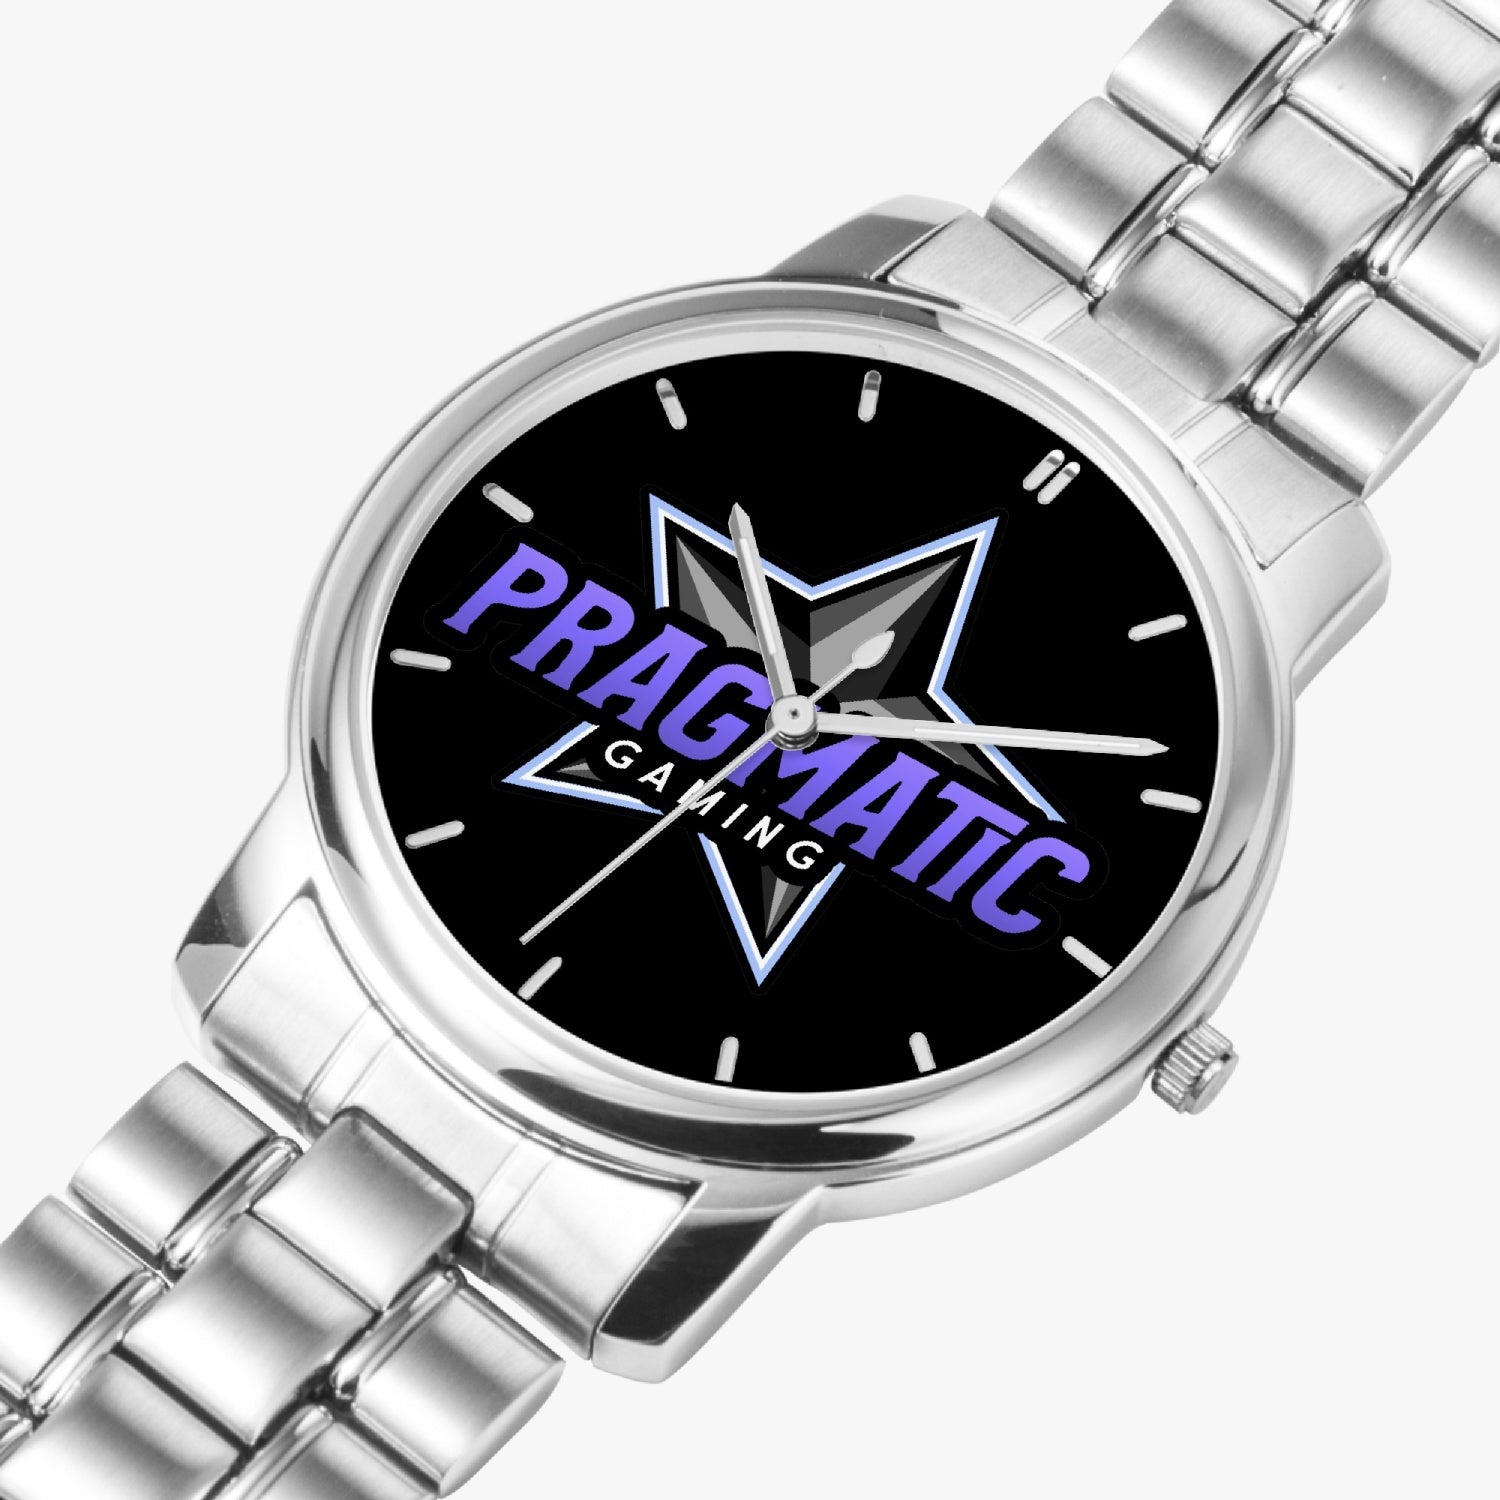 prag Stainless Steel Quartz Watch